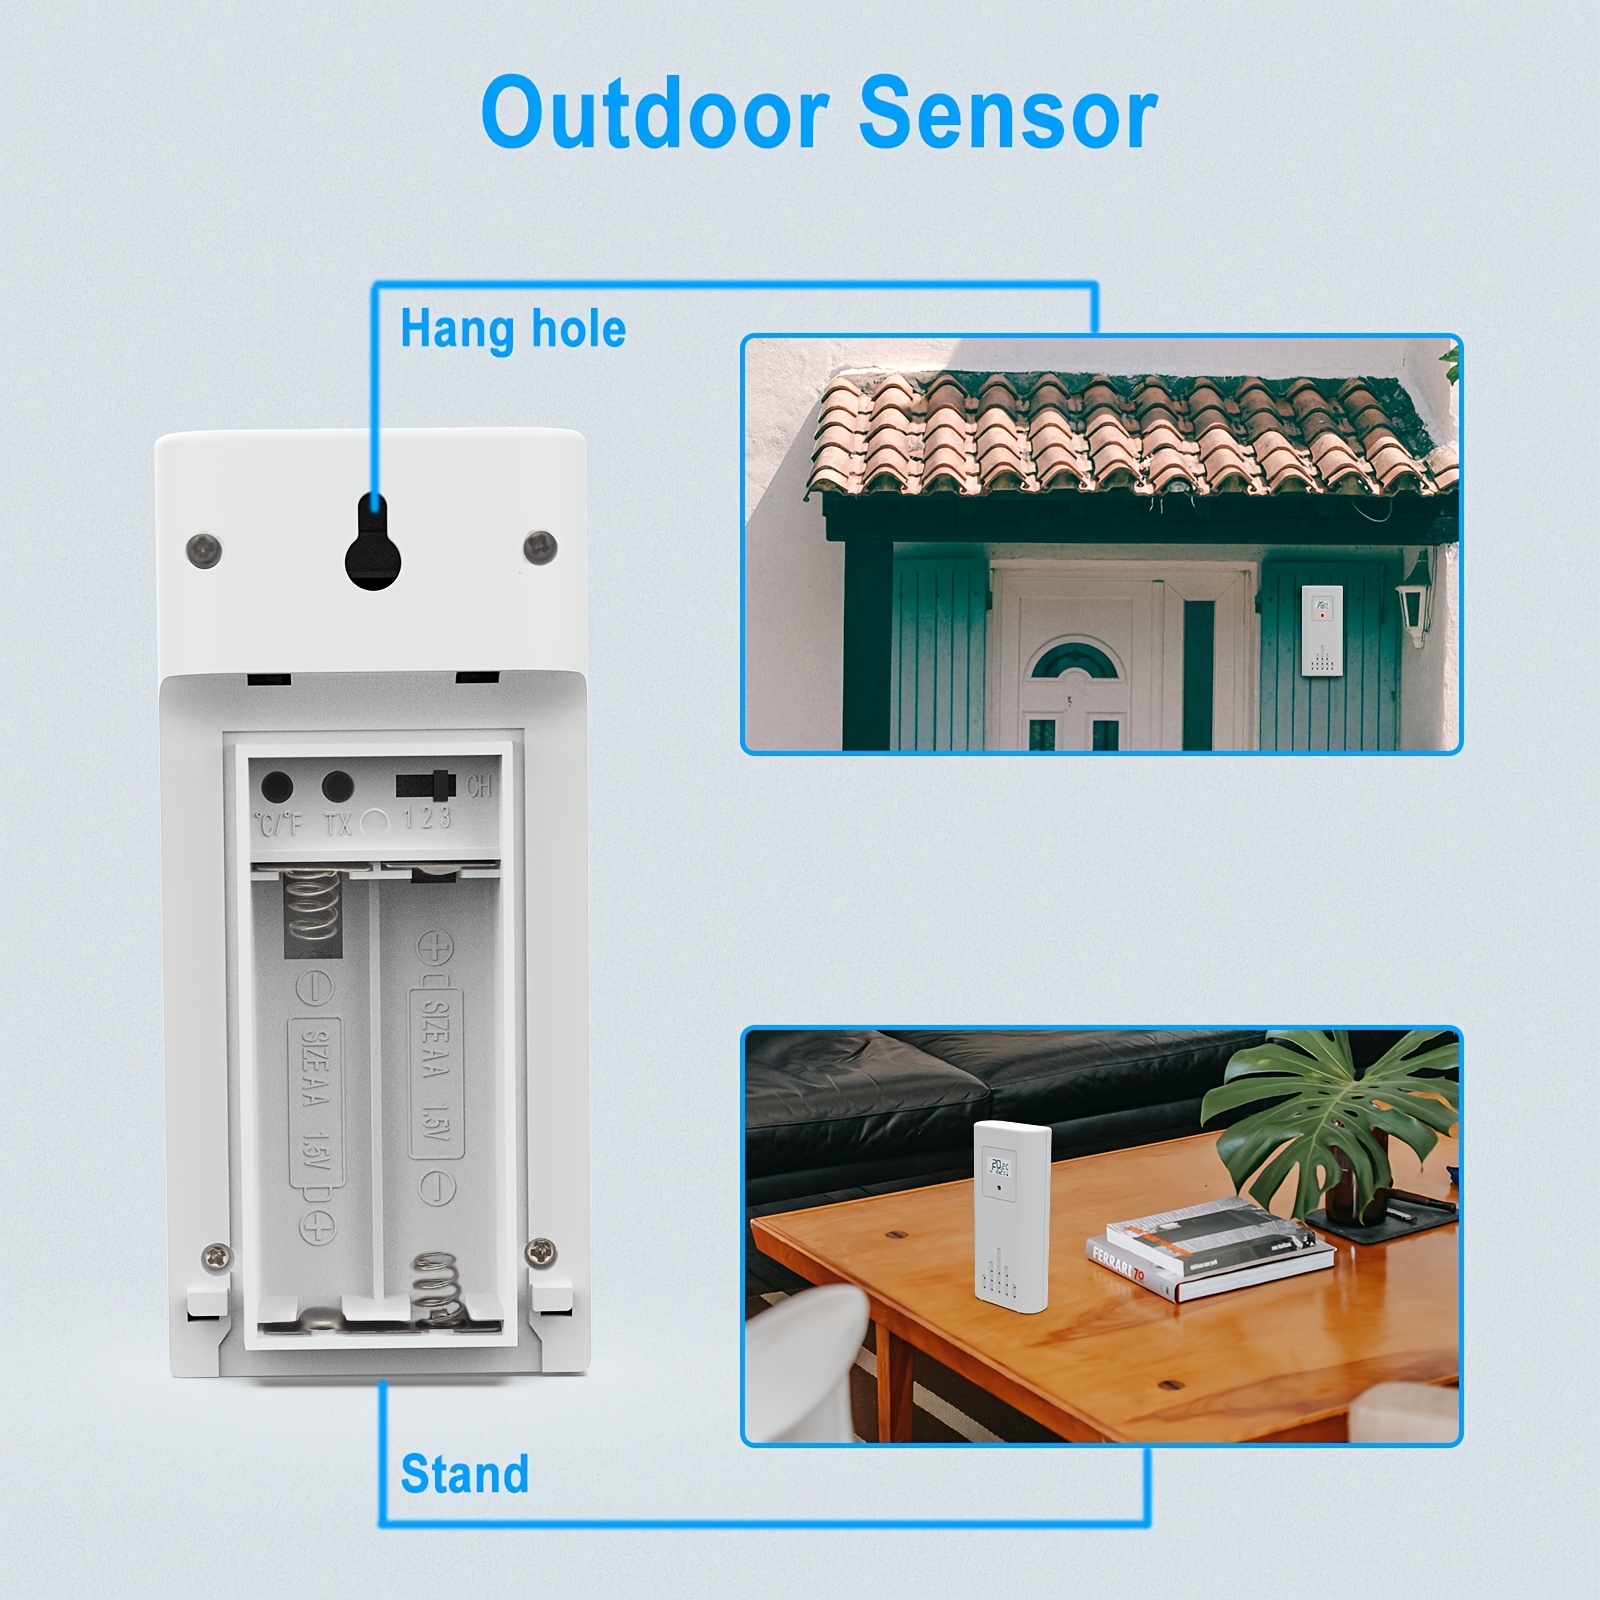 Acheter PDTO Digital LCD Station météo intérieure et extérieure Thermomètre sans  fil Humidimètre